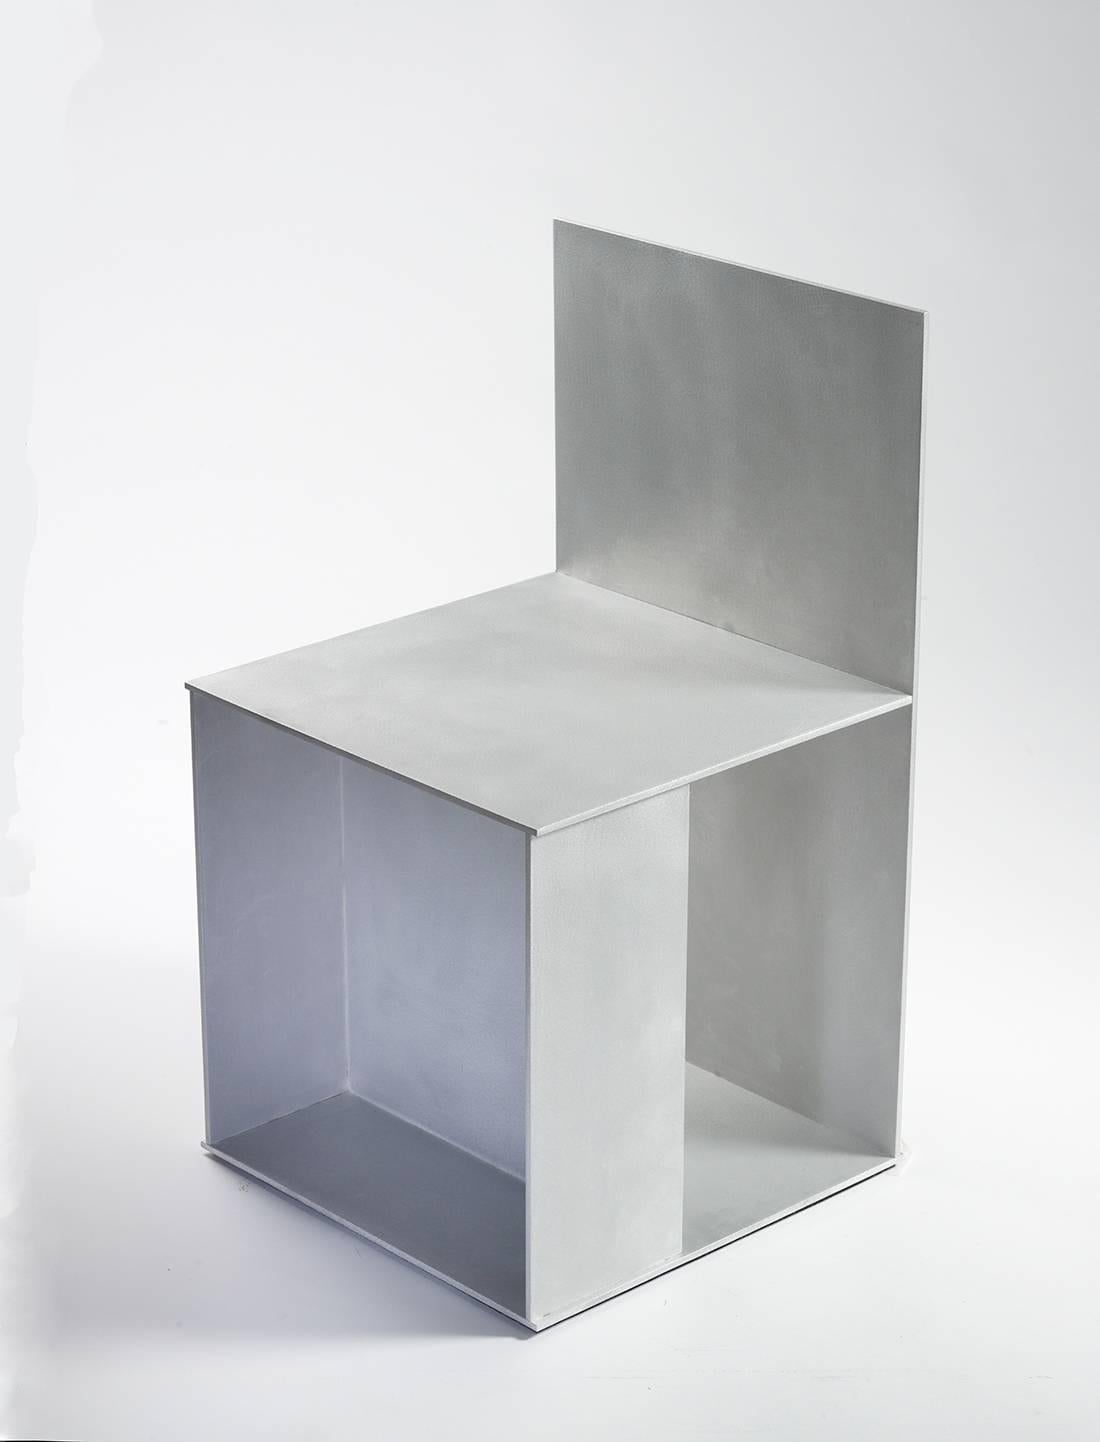 Chaise d'appoint minimaliste en plaque d'aluminium de 0,25 pouce d'épaisseur, faisant partie du solo neuf variations à la galerie Mondo Cane en 2011. Des plaques d'aluminium découpées numériquement s'entrecroisent et sont fusionnées par des soudures